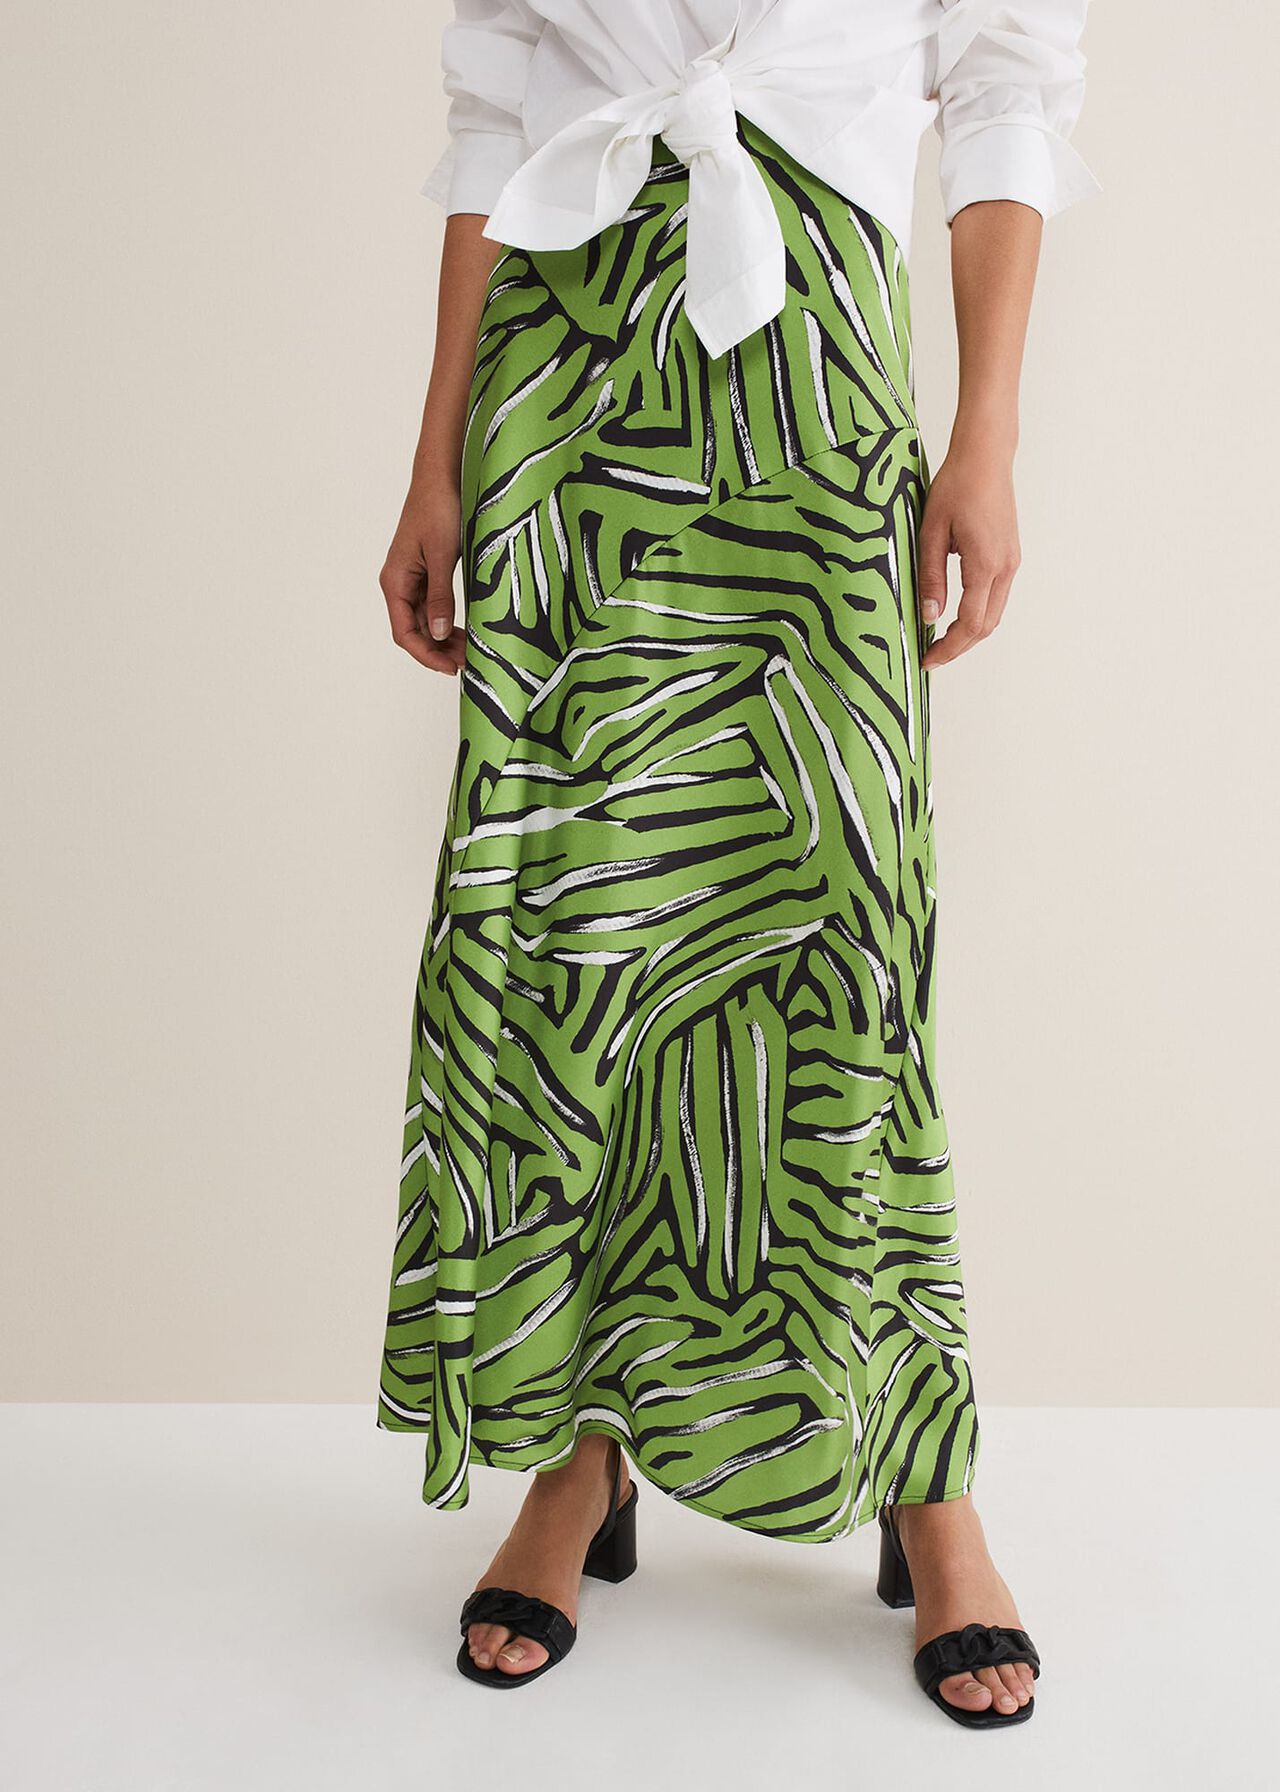 Norabel Zebra Print Satin Skirt